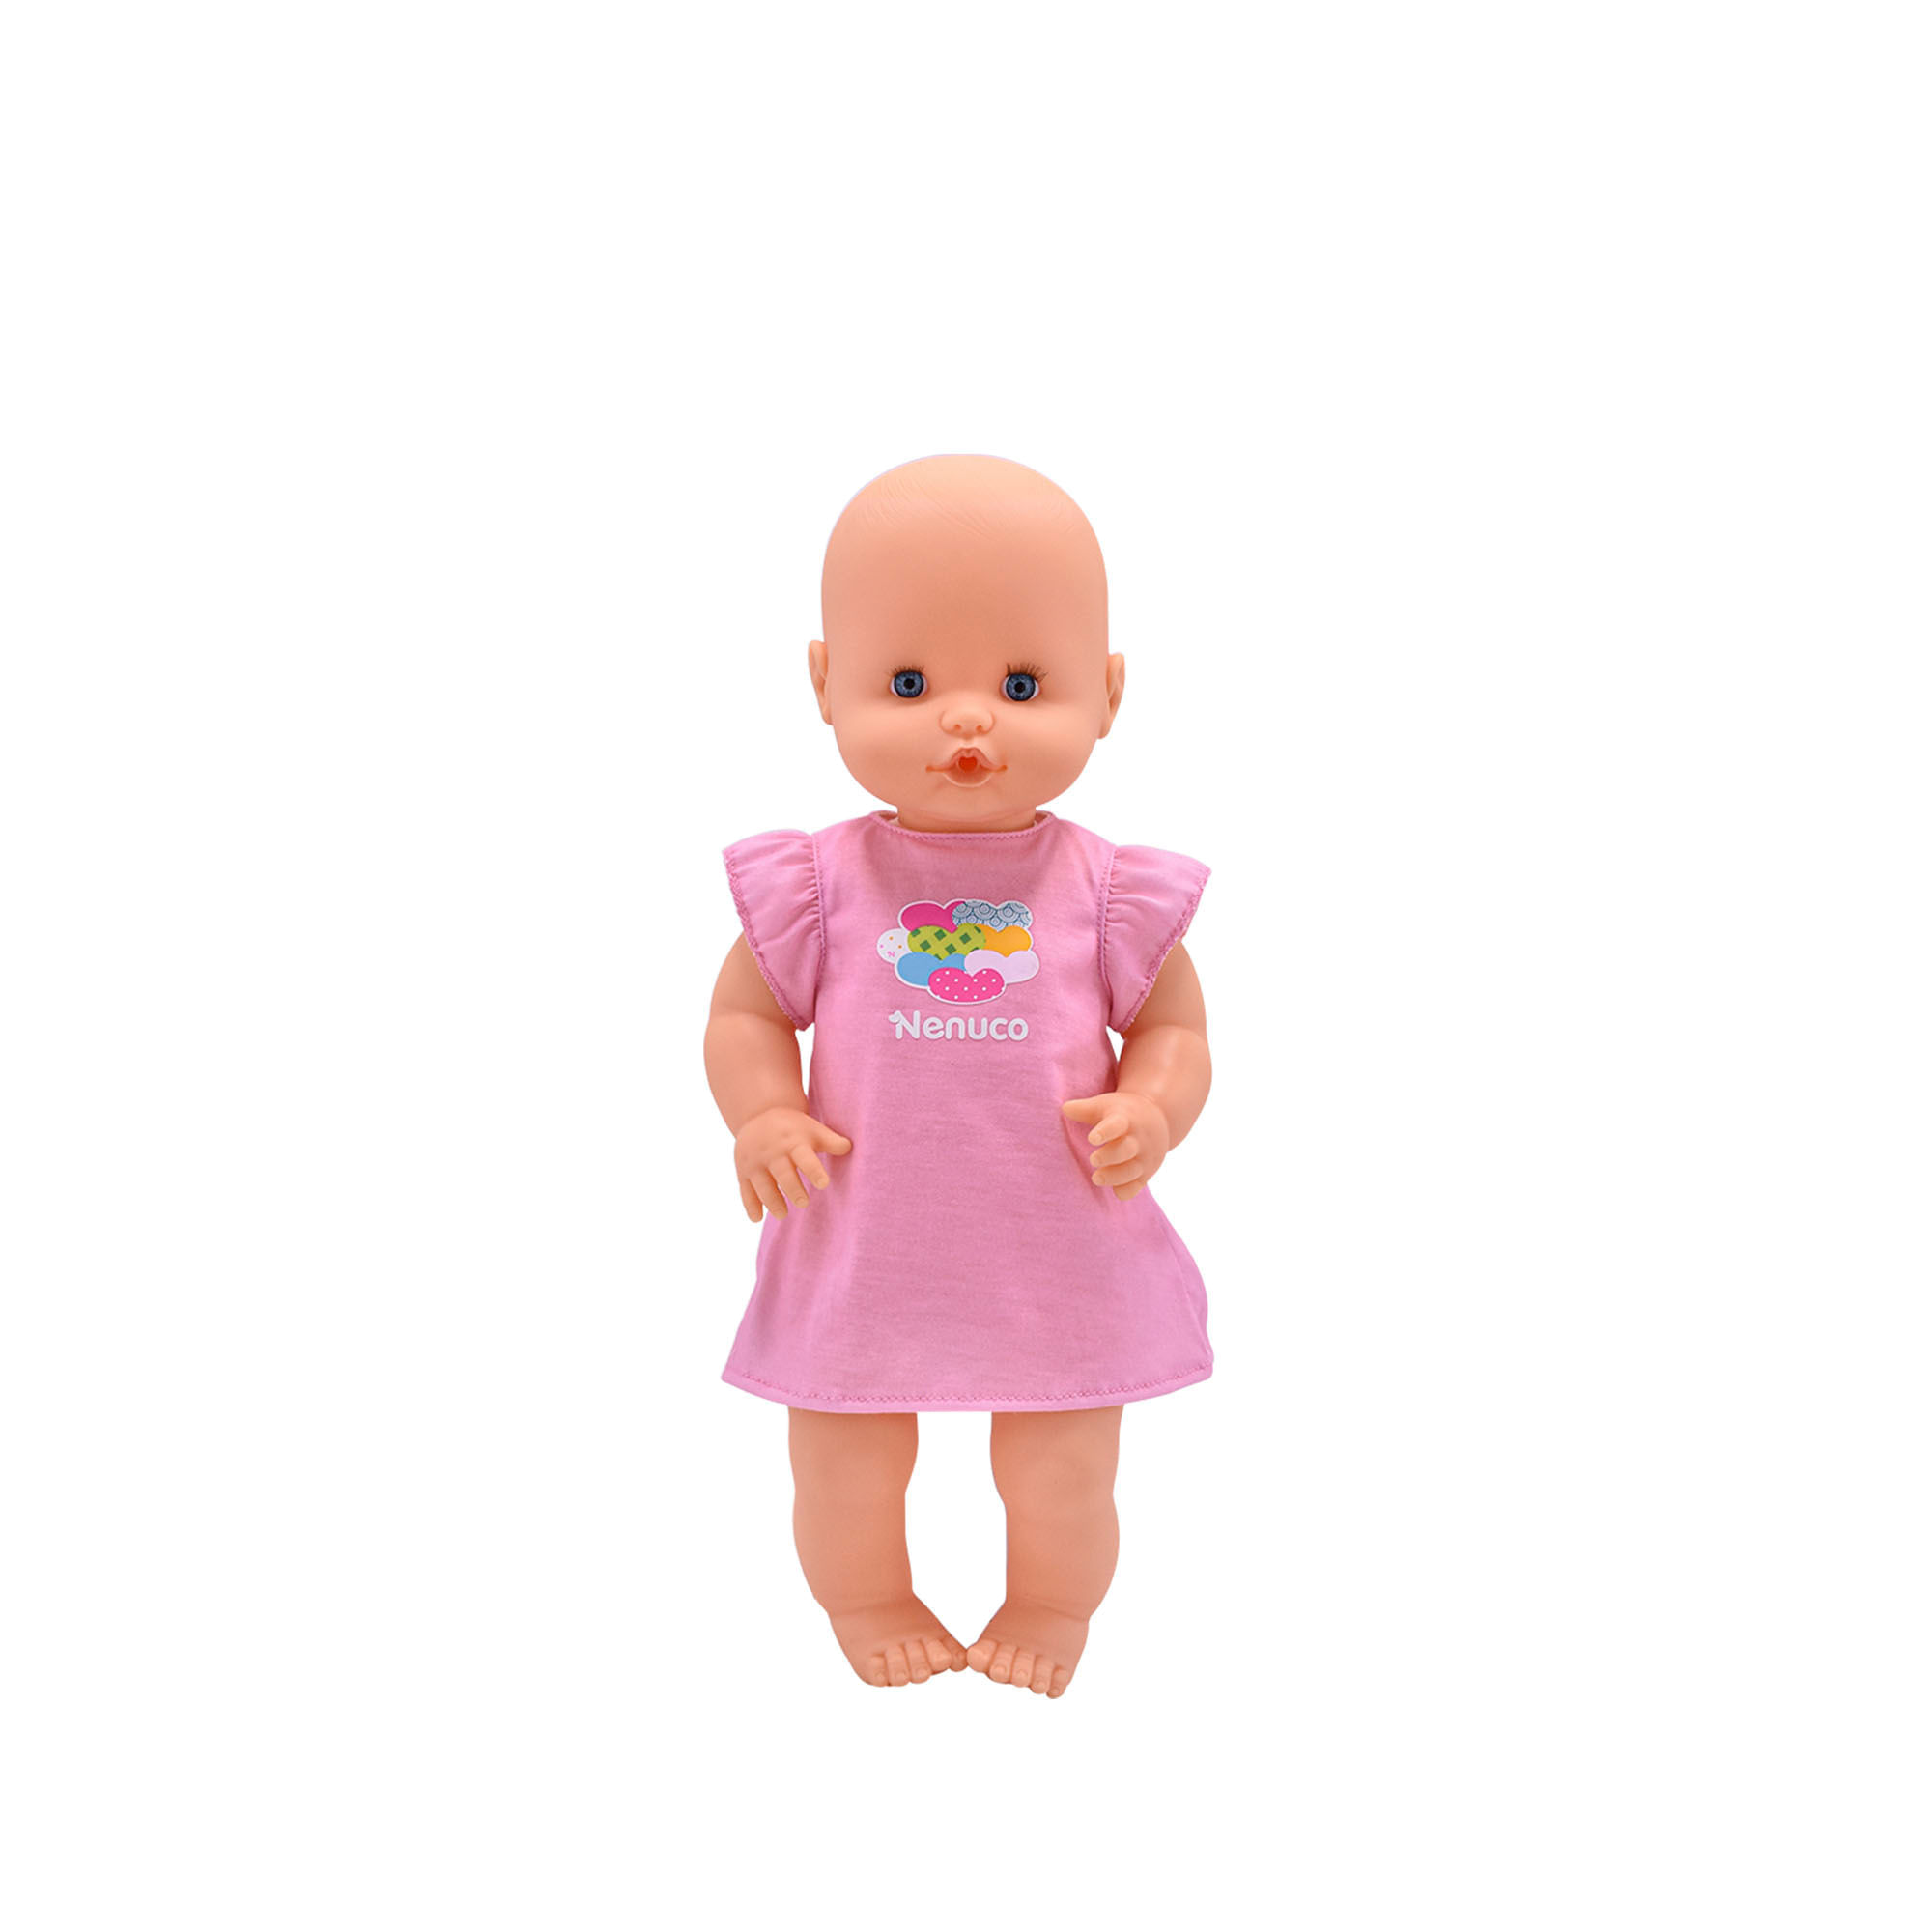 Nenuco - El Bebé muñeco más bonito